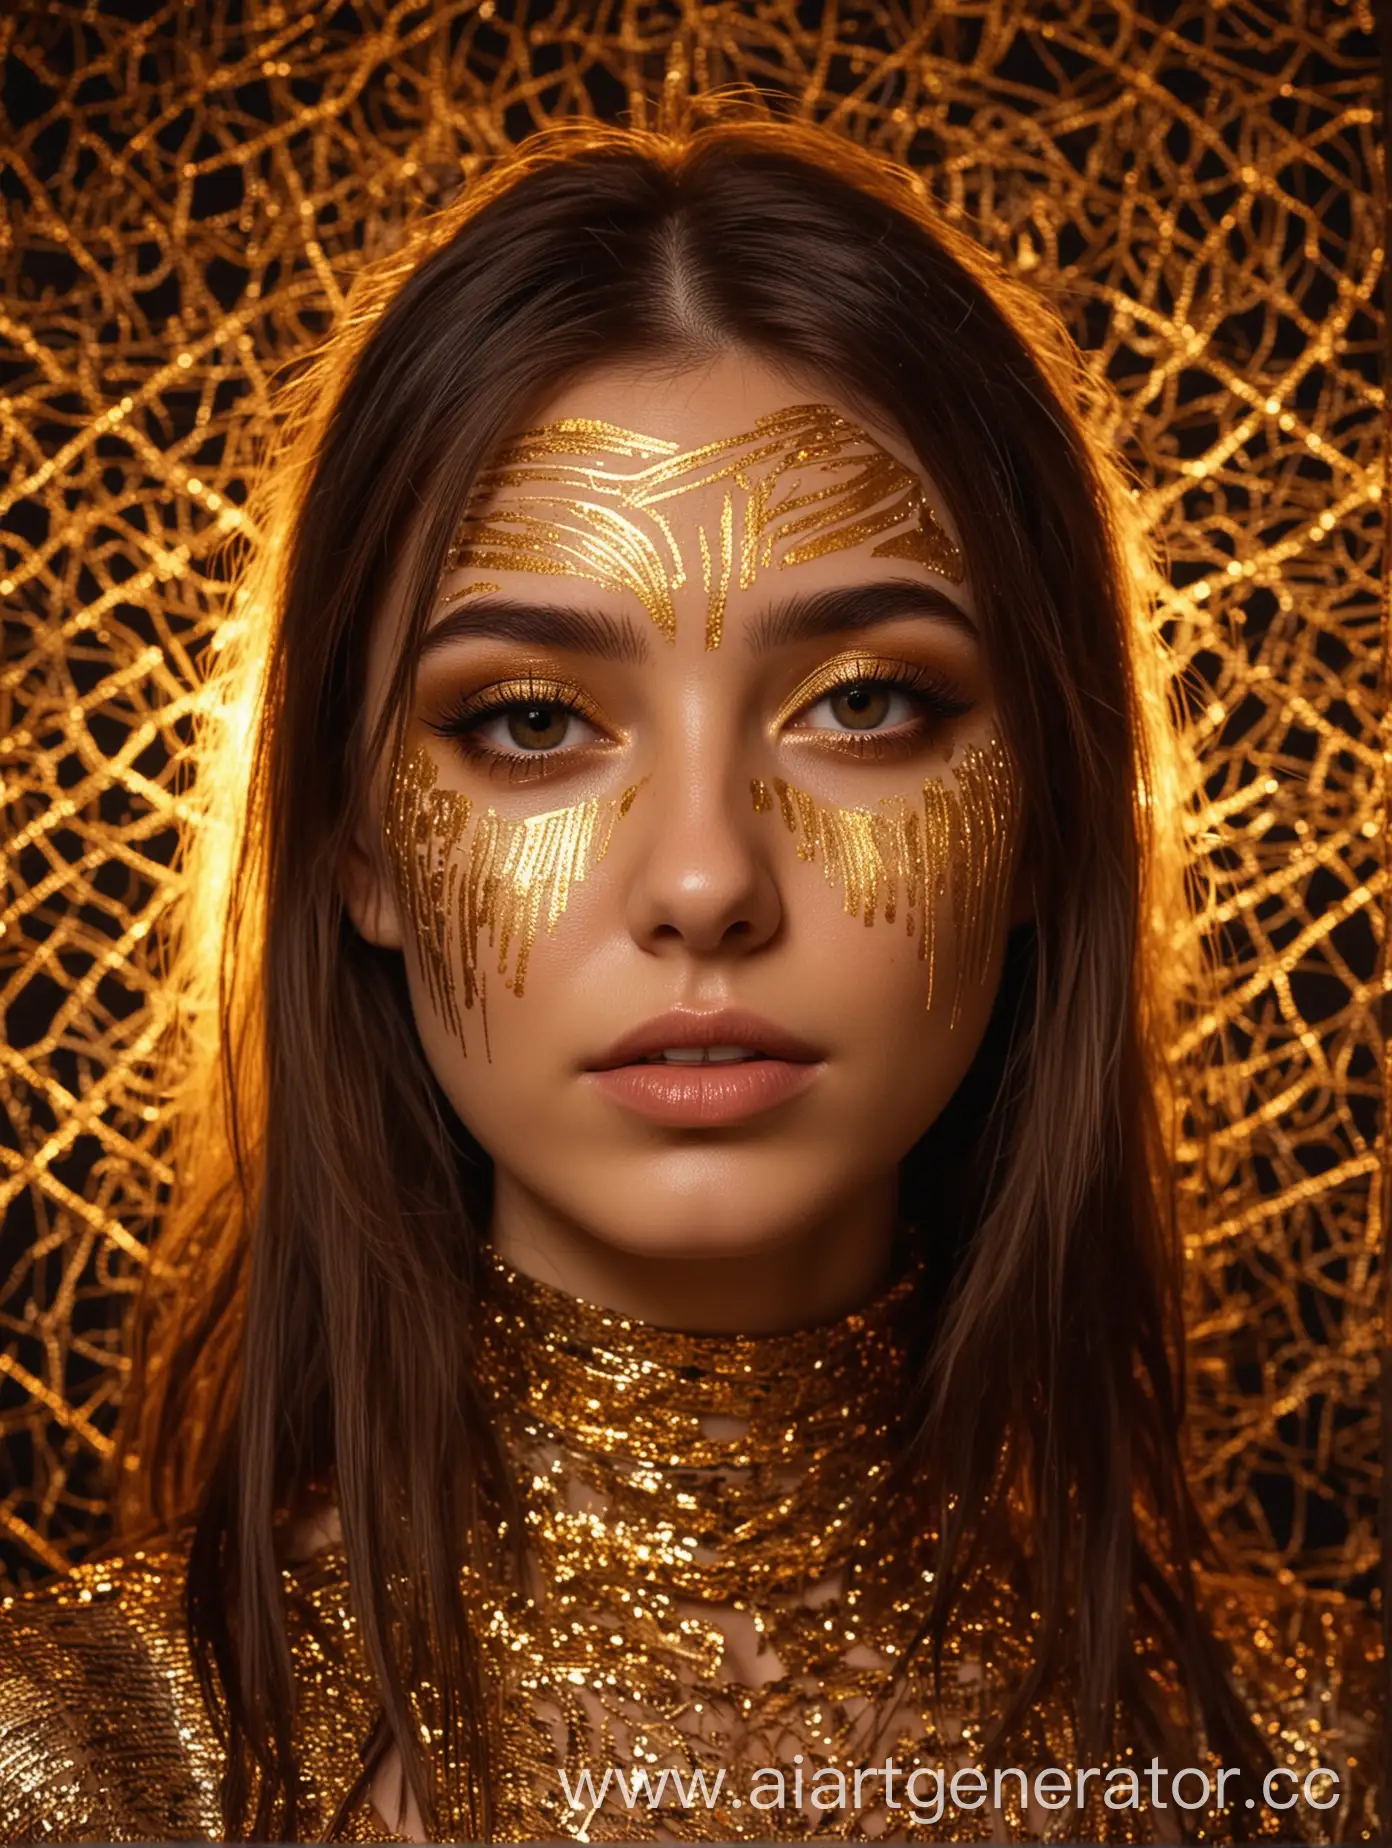 Brunette-Girl-Portrait-in-Neon-Nightclub-Ambiance-with-Golden-Patterns